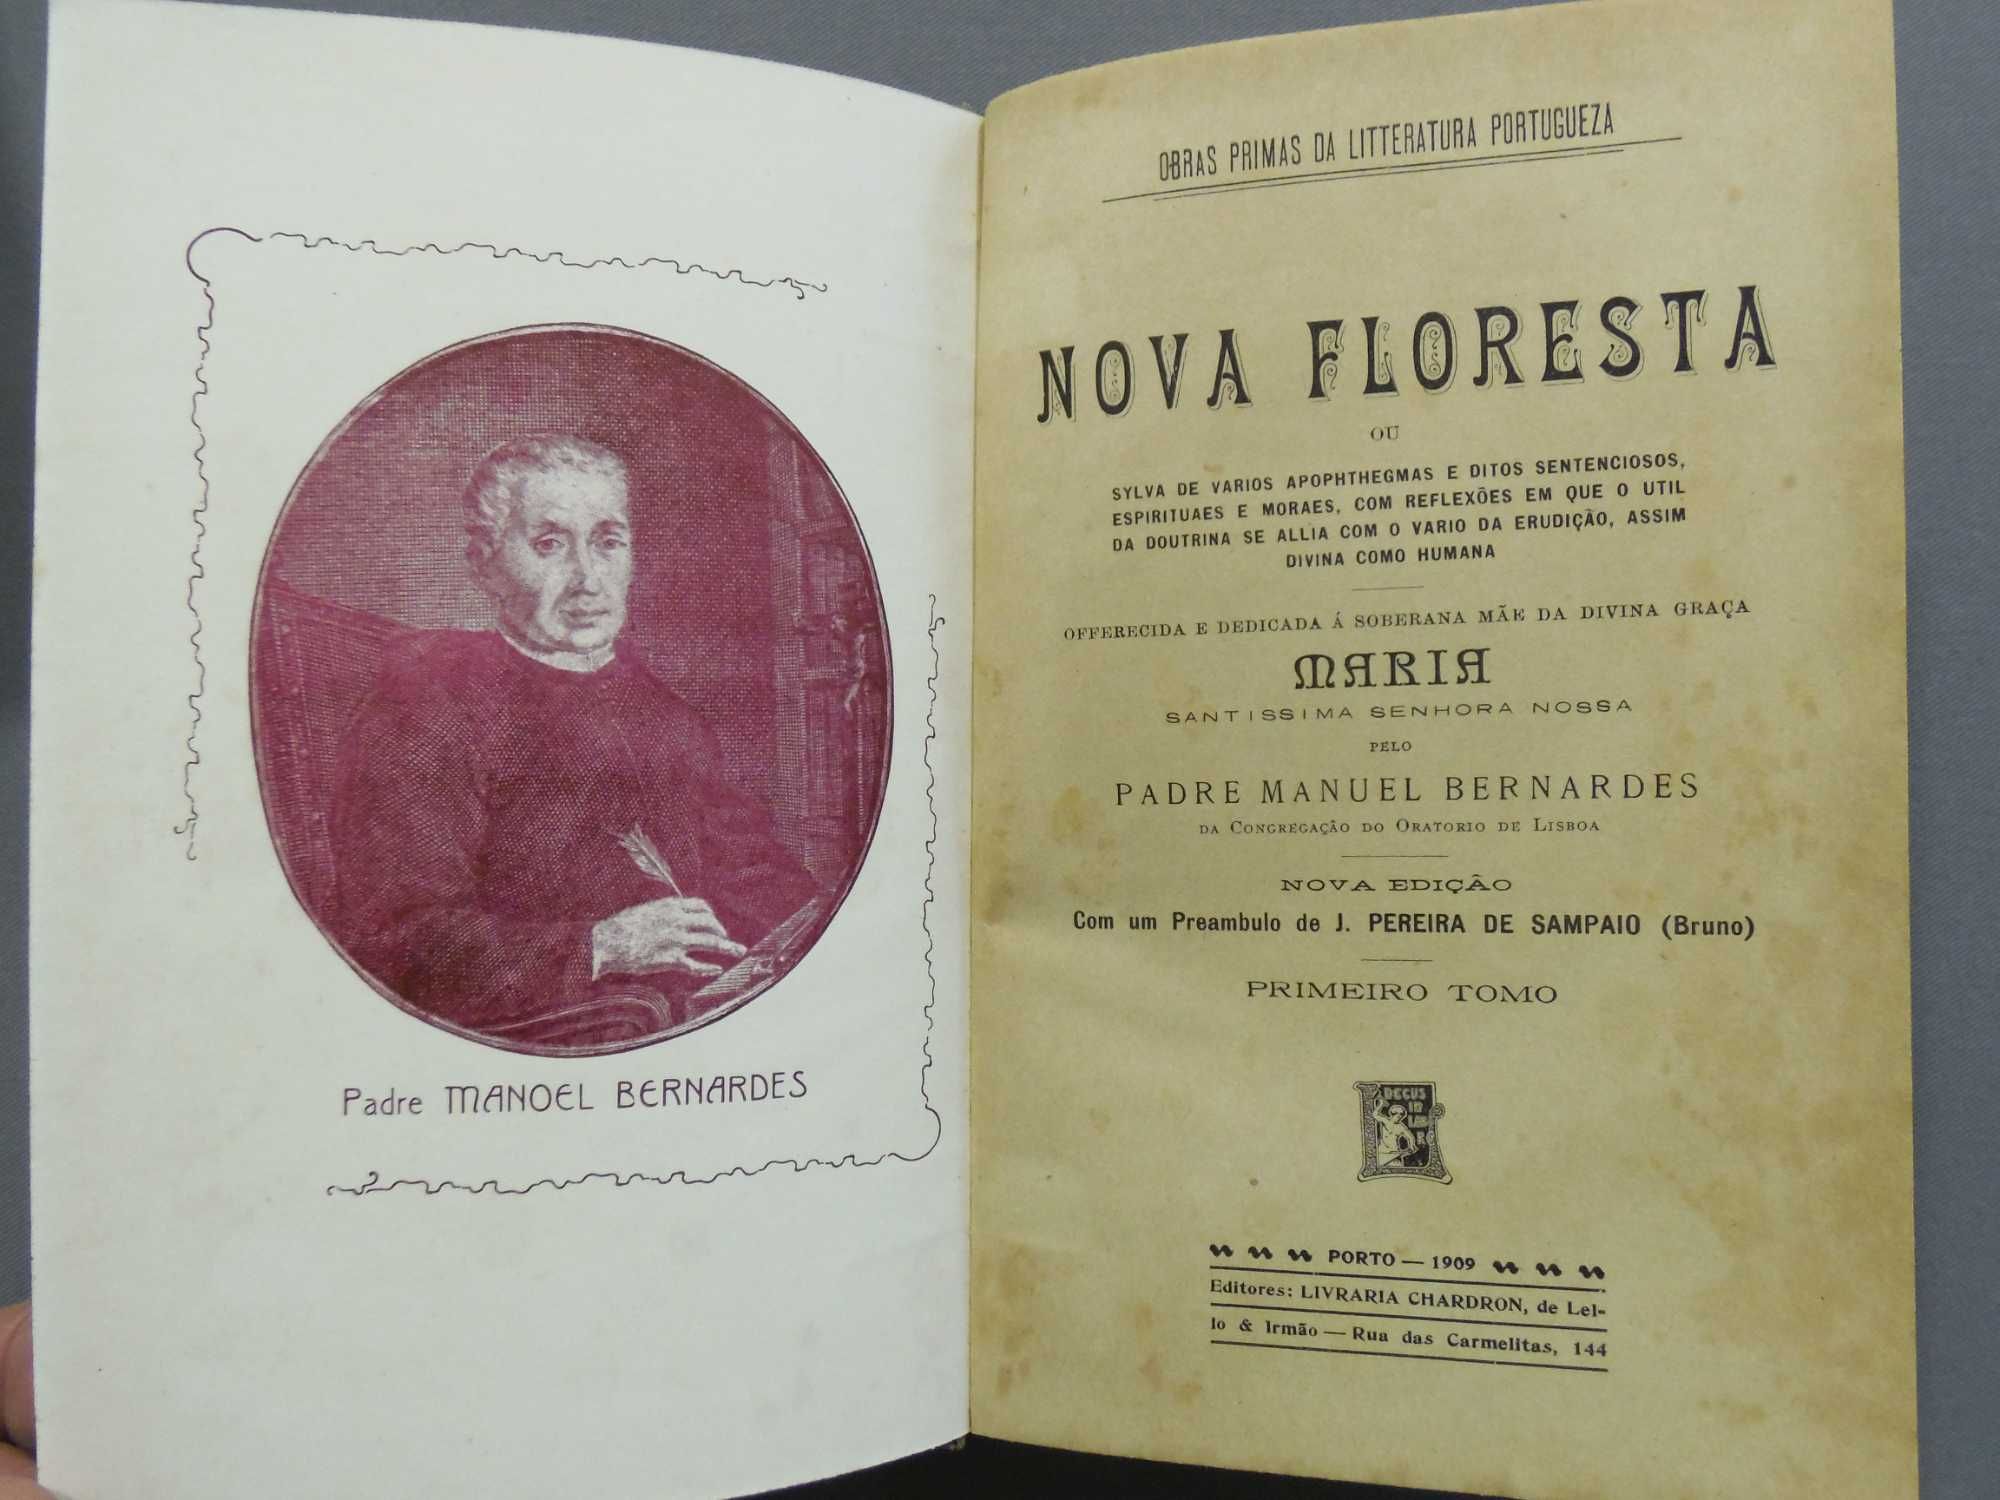 Colecção de Livros Nova Floresta do Padre Manuel Bernardes - 1909/1911